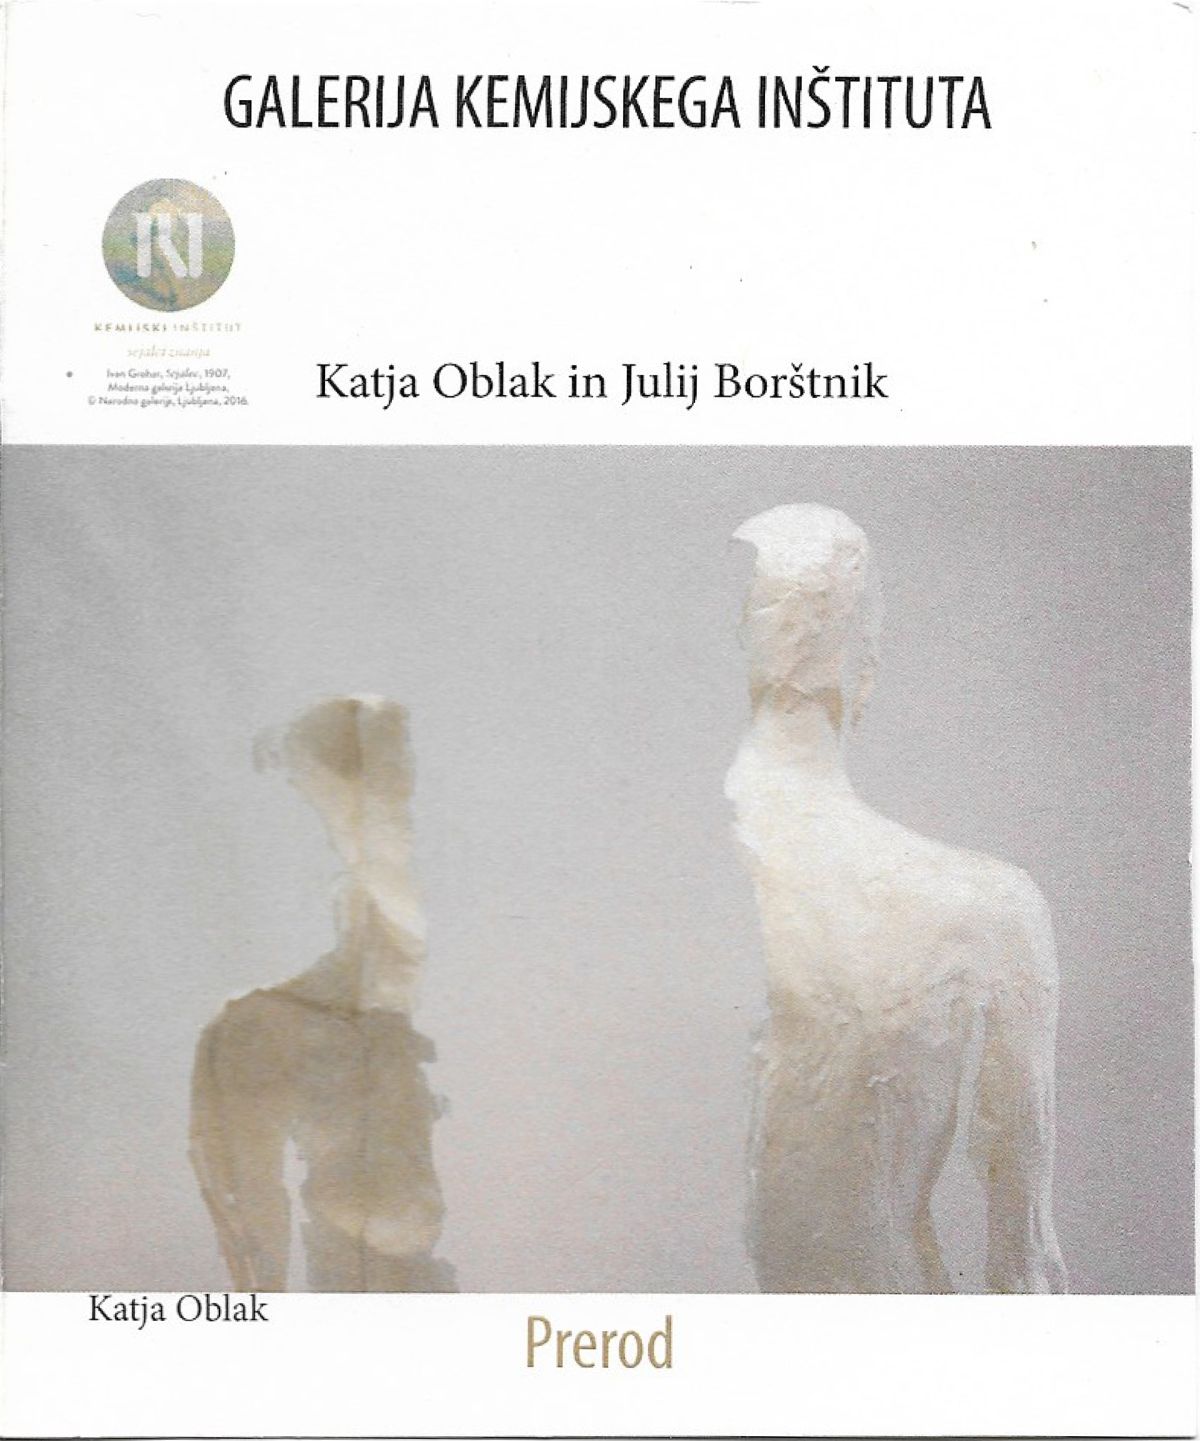 Zgibanka - PREROD, samostojna razstava na Kemijskem inštitutu v Ljubljani, skupaj s kiparko Katjo Oblak, naslovnica, maj 2018.